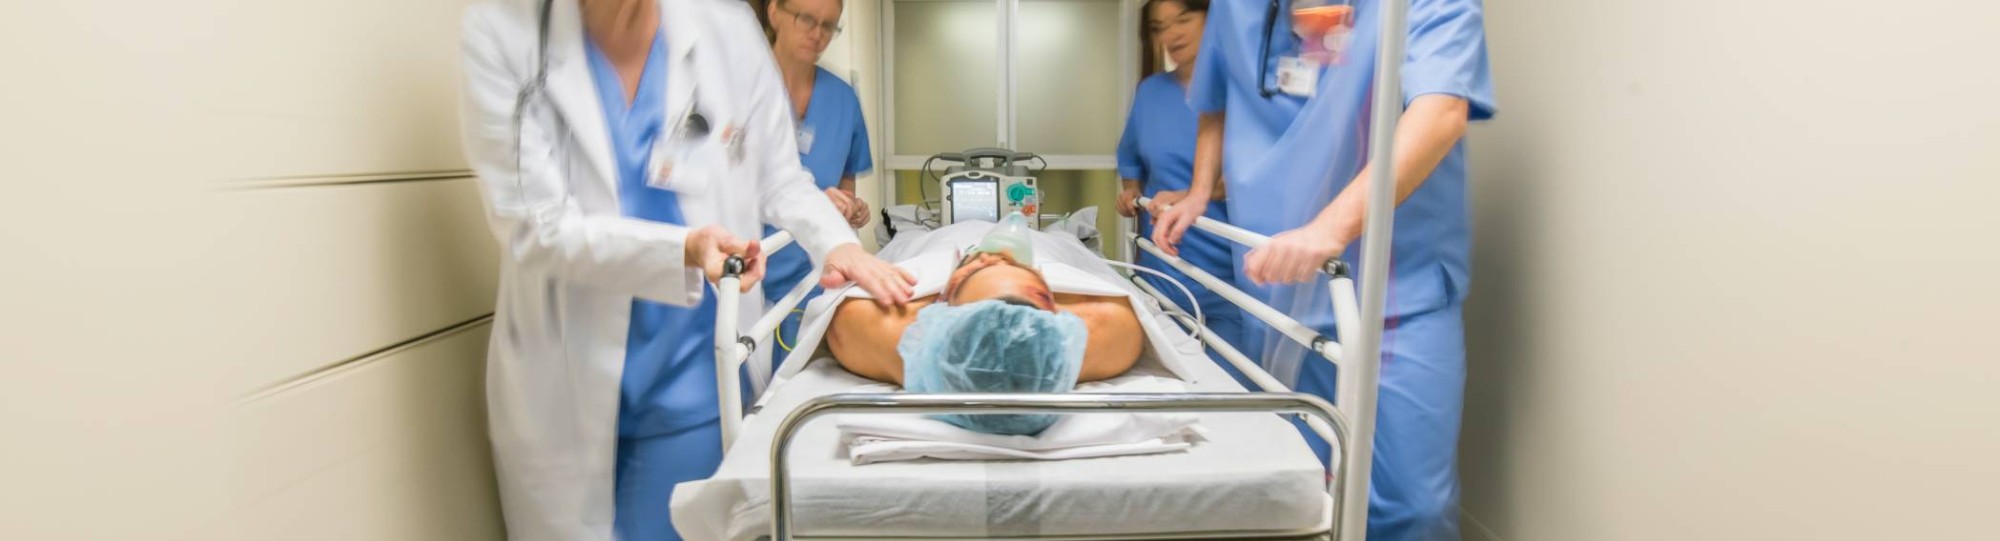 Medewerkers van de spoedeisende zorg lopen met spoed met een patiënt in bed door de gang van een ziekenhuis.